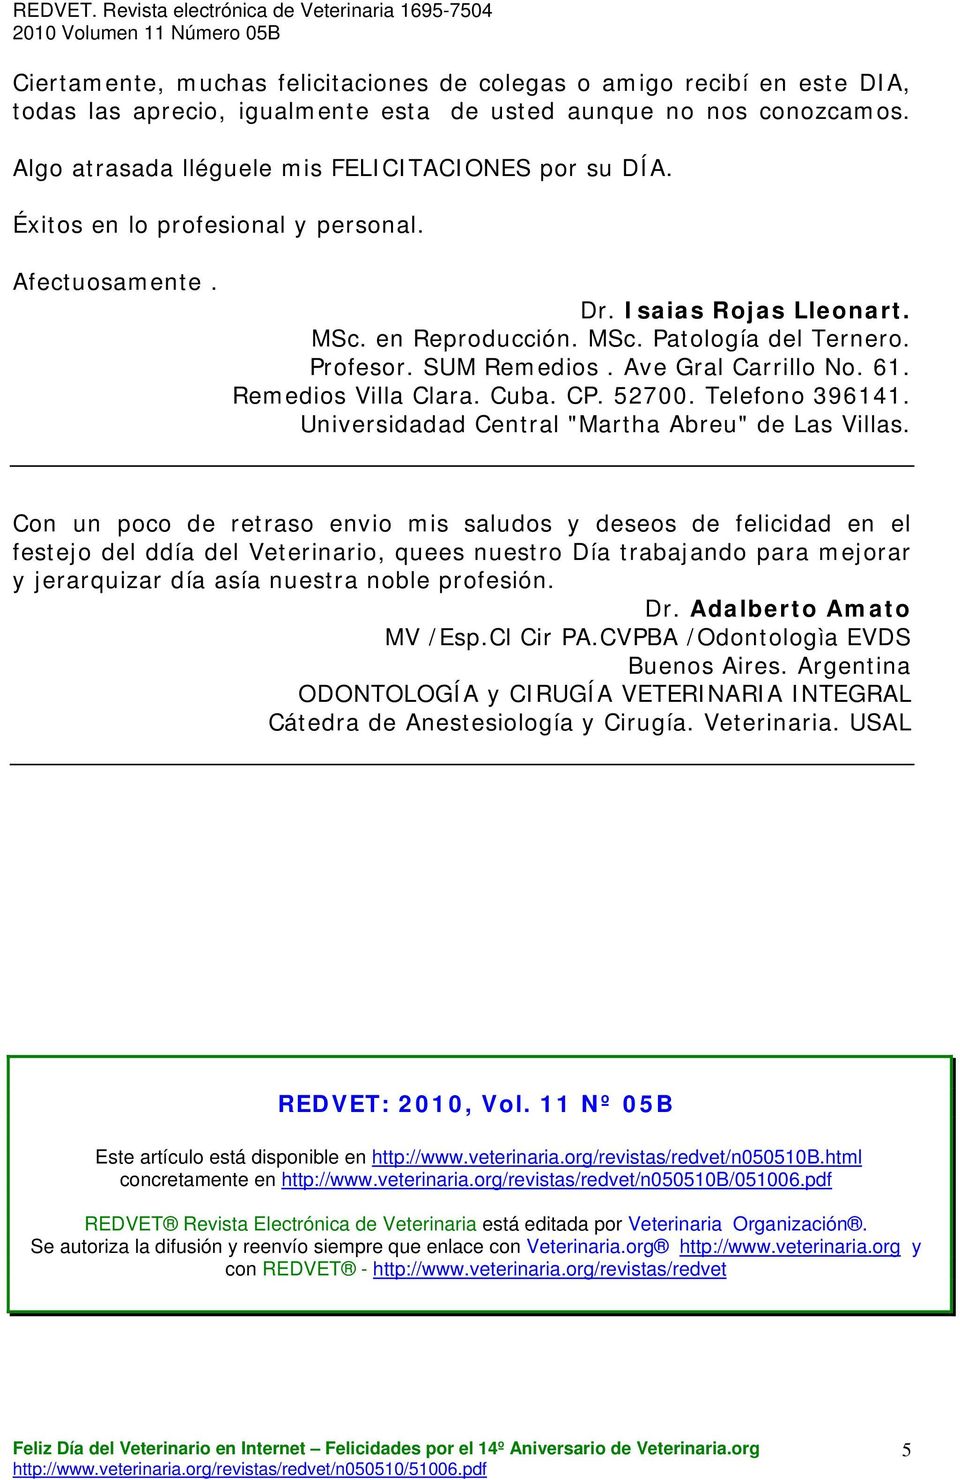 Remedios Villa Clara. Cuba. CP. 52700. Telefono 396141. Universidadad Central "Martha Abreu" de Las Villas.